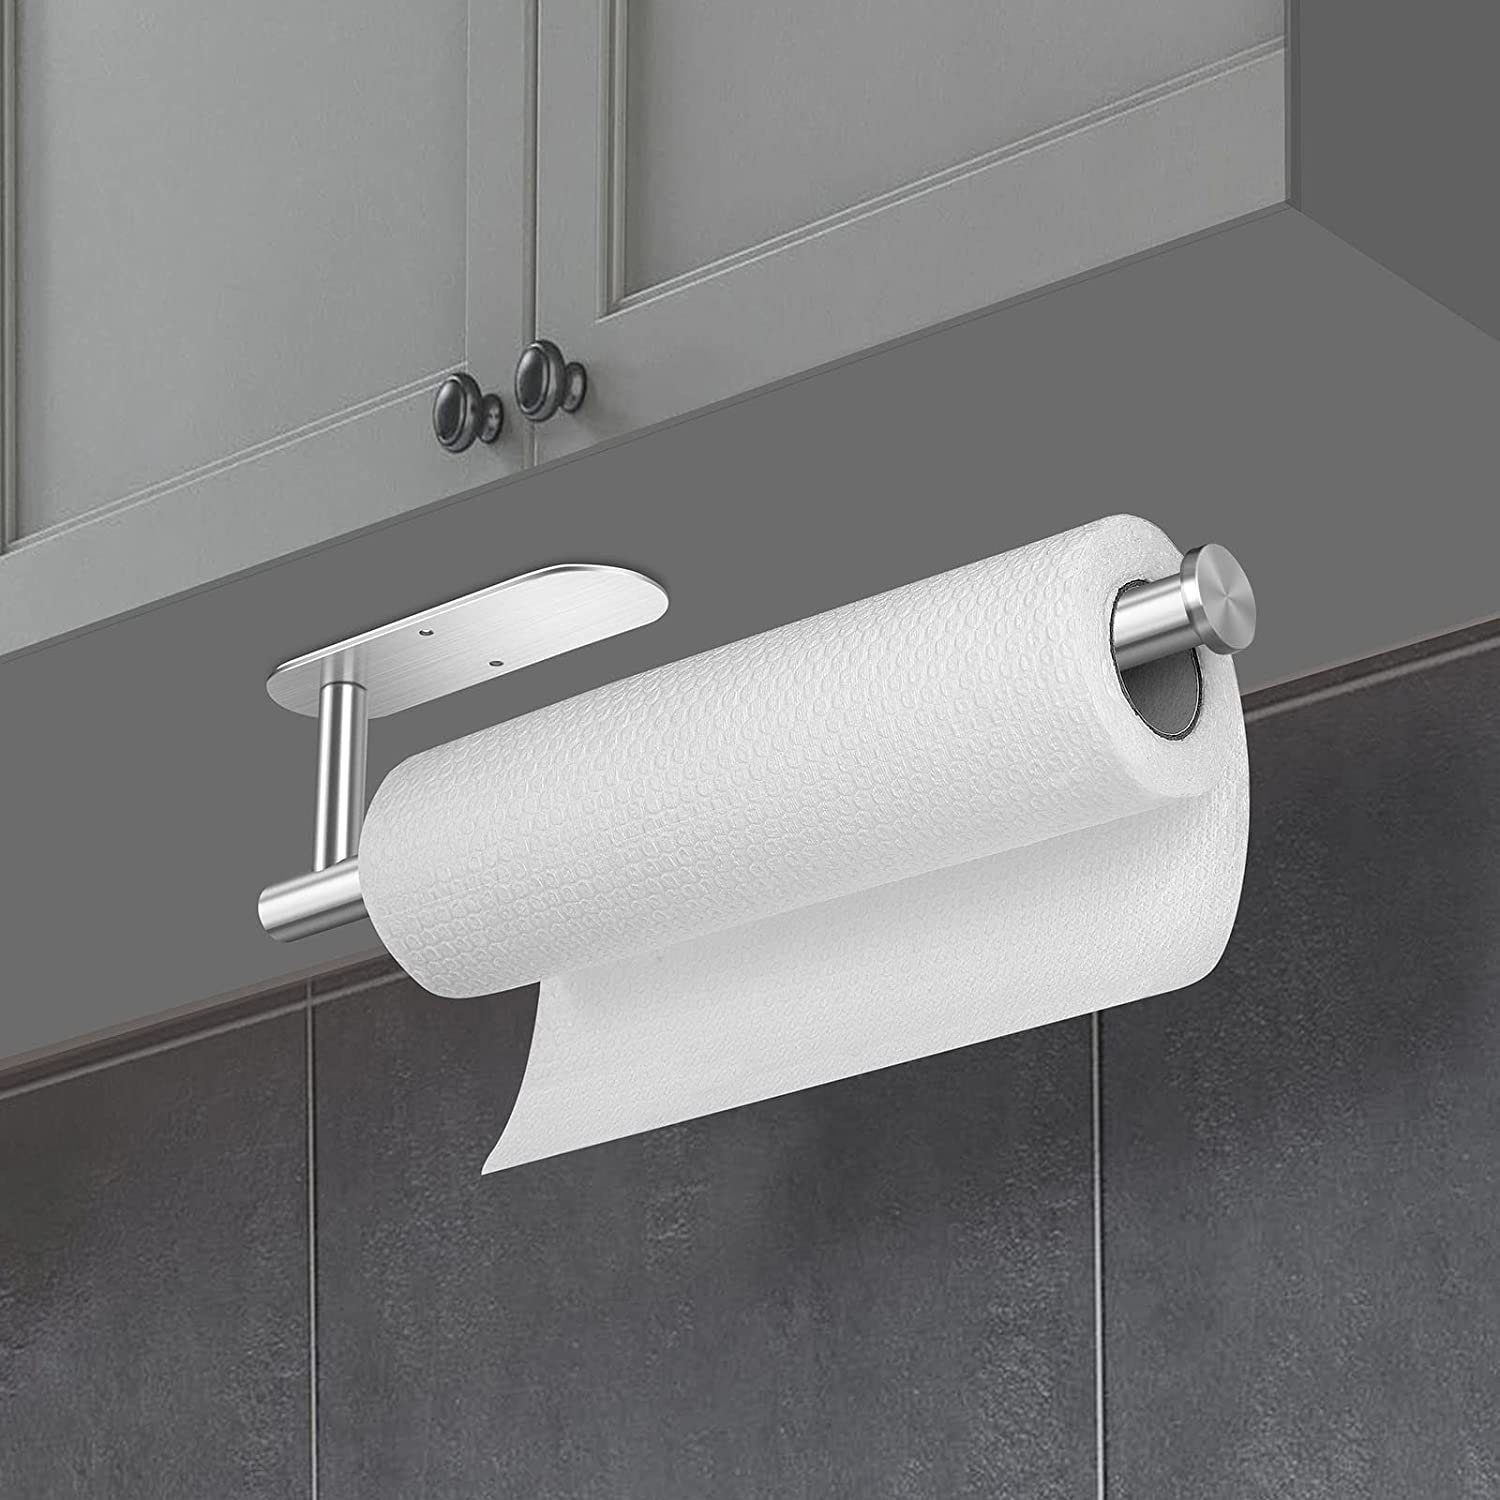 Badezimmer zggzerg Ohne Küchenrollenhalter Bohren Silber Küchenrollenhalter Waschbecken Speisekammer für